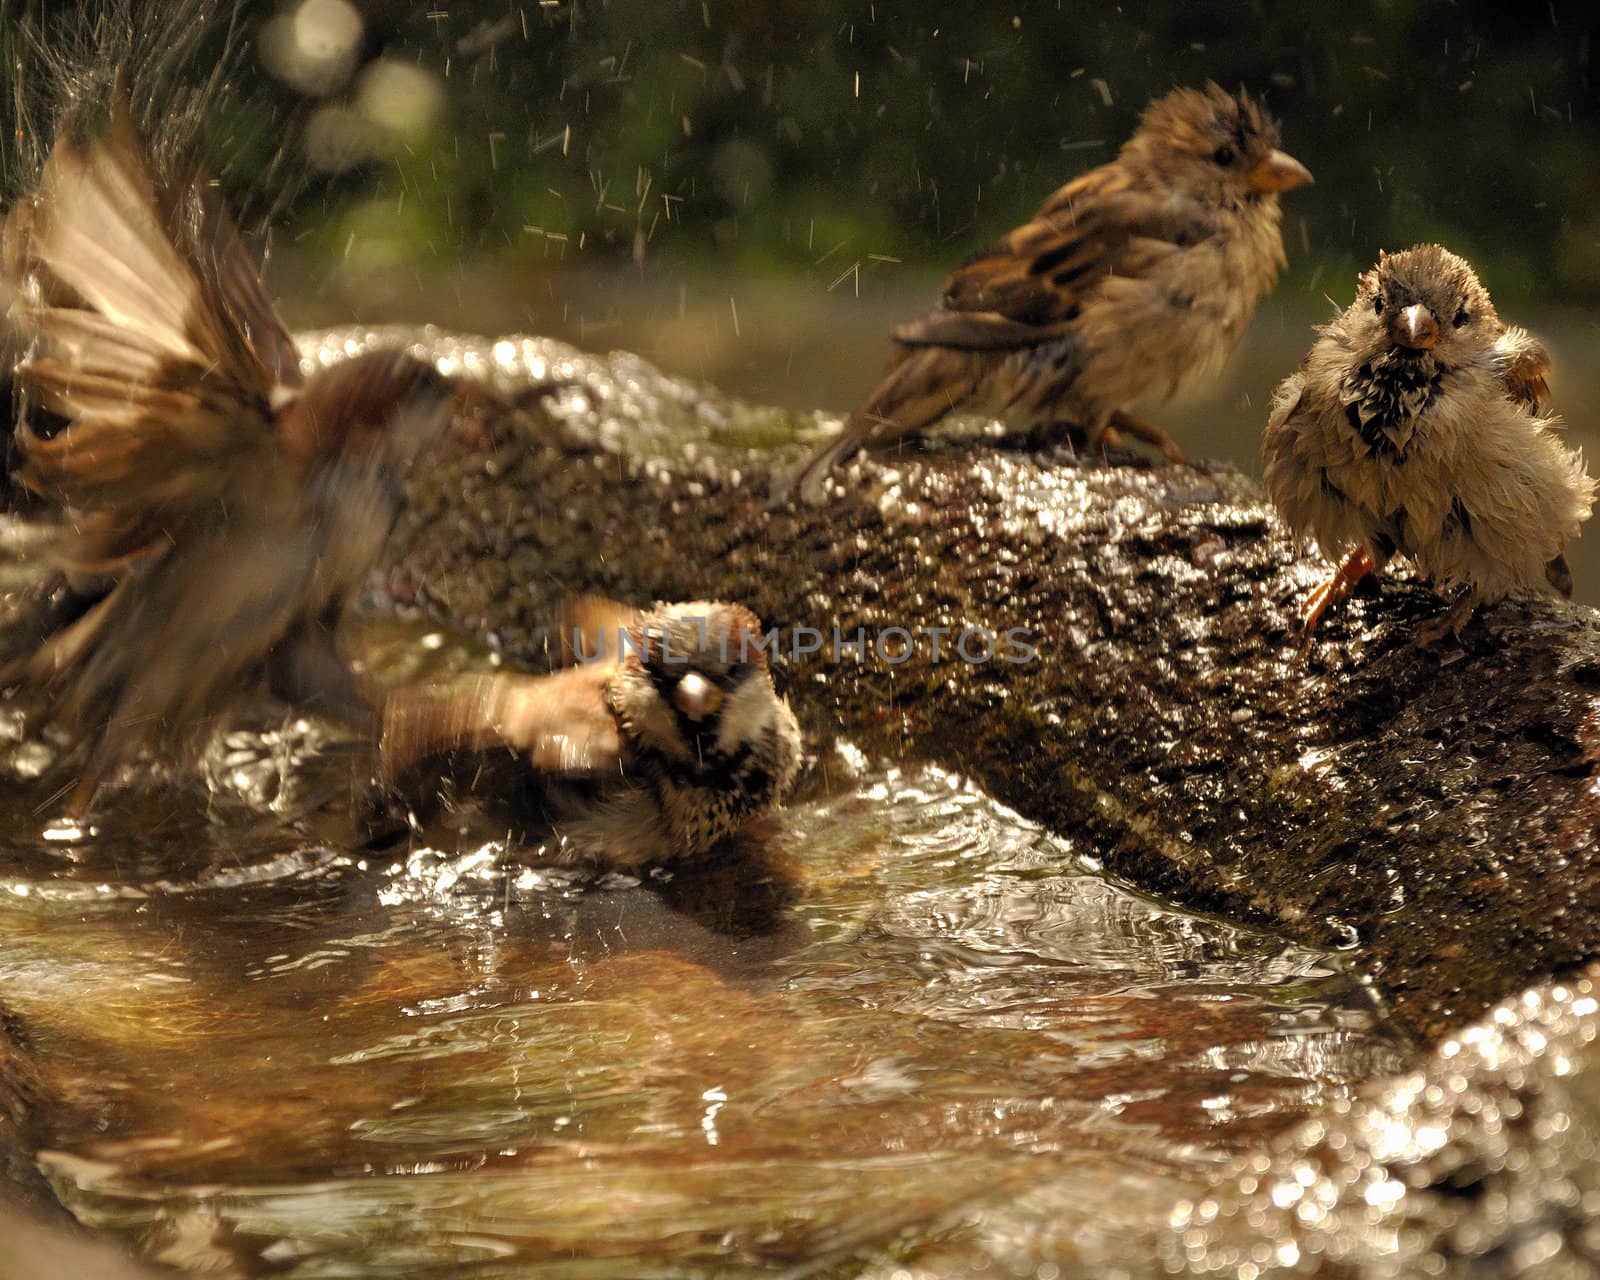 Birds taking a bath. by jmffotos